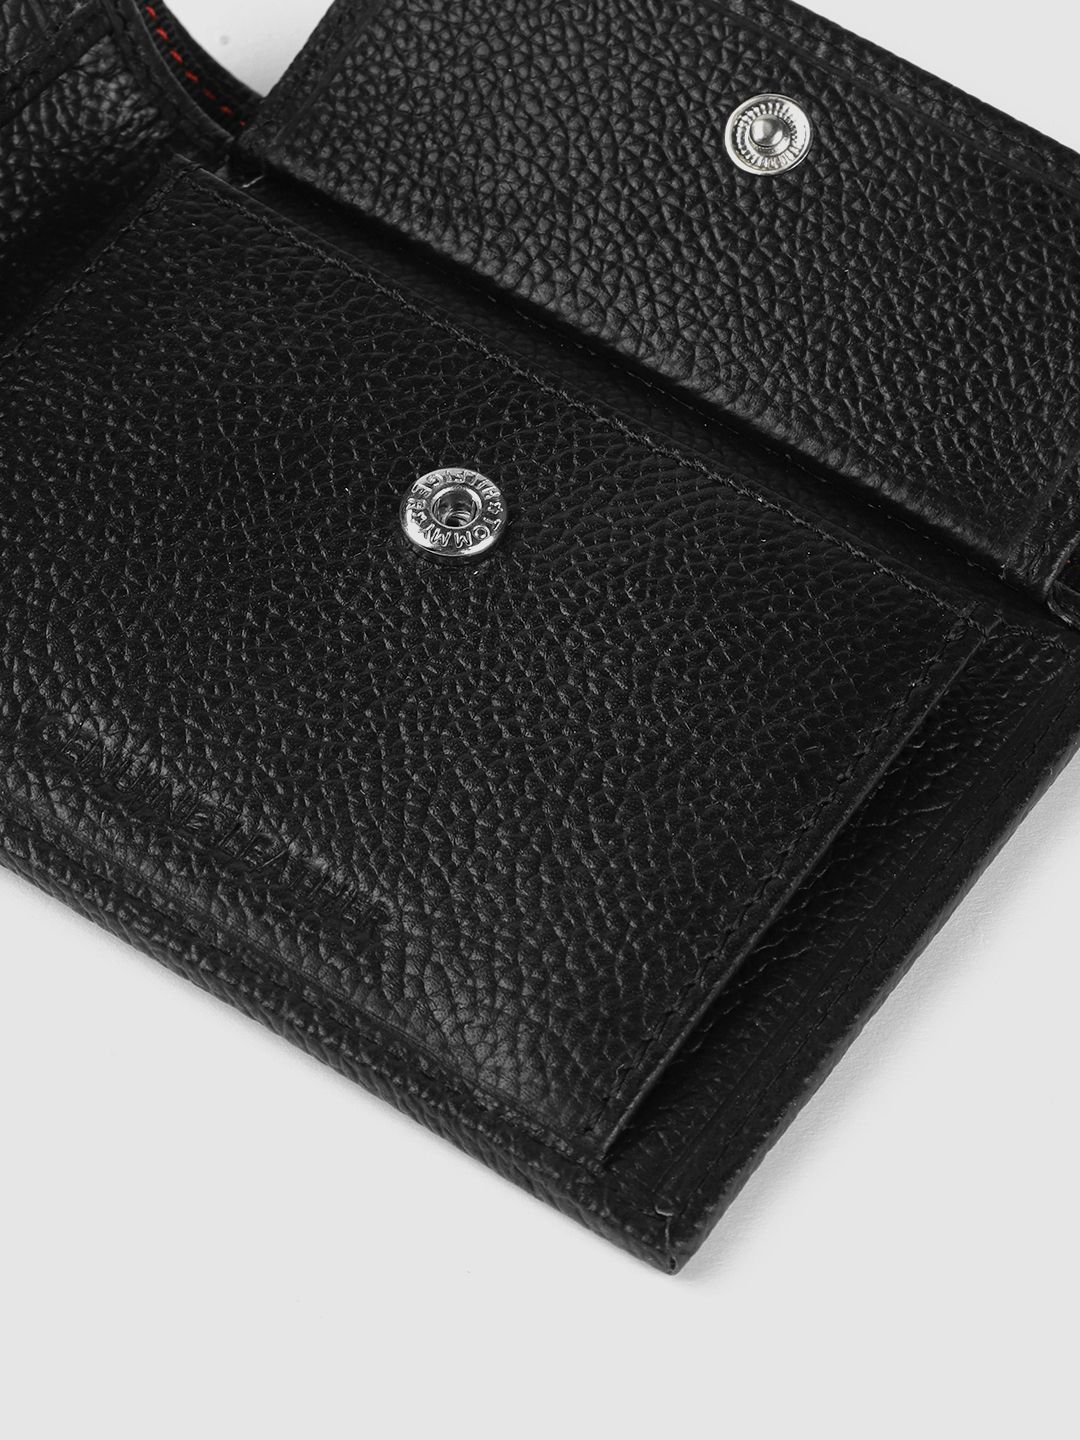 Tommy Hilfiger Arke Mens Leather Global Coin Wallet Black